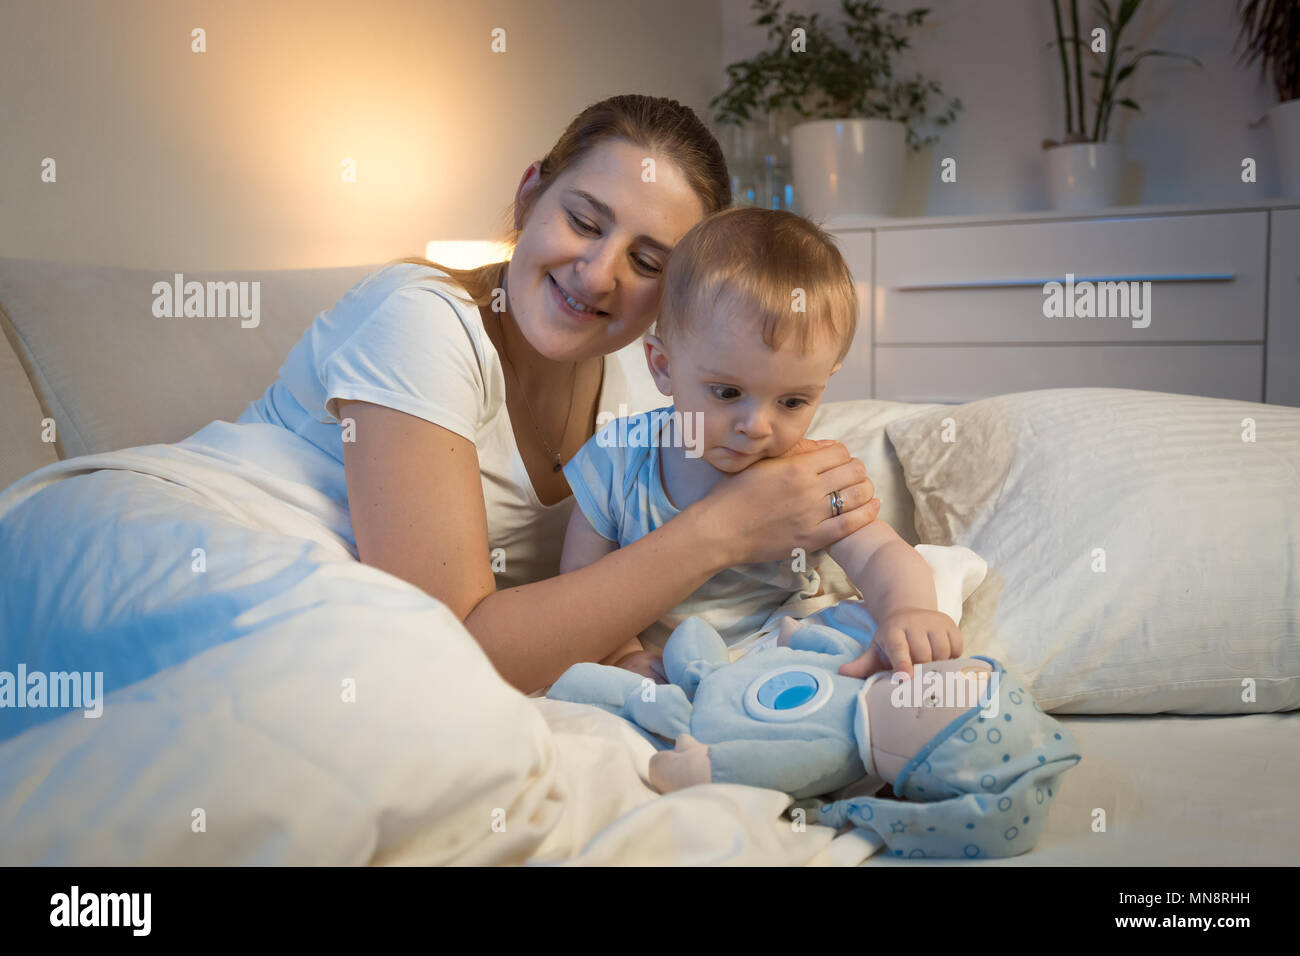 Sonriente joven madre abrazando a su hijo antes de ir a dormir? Foto de stock